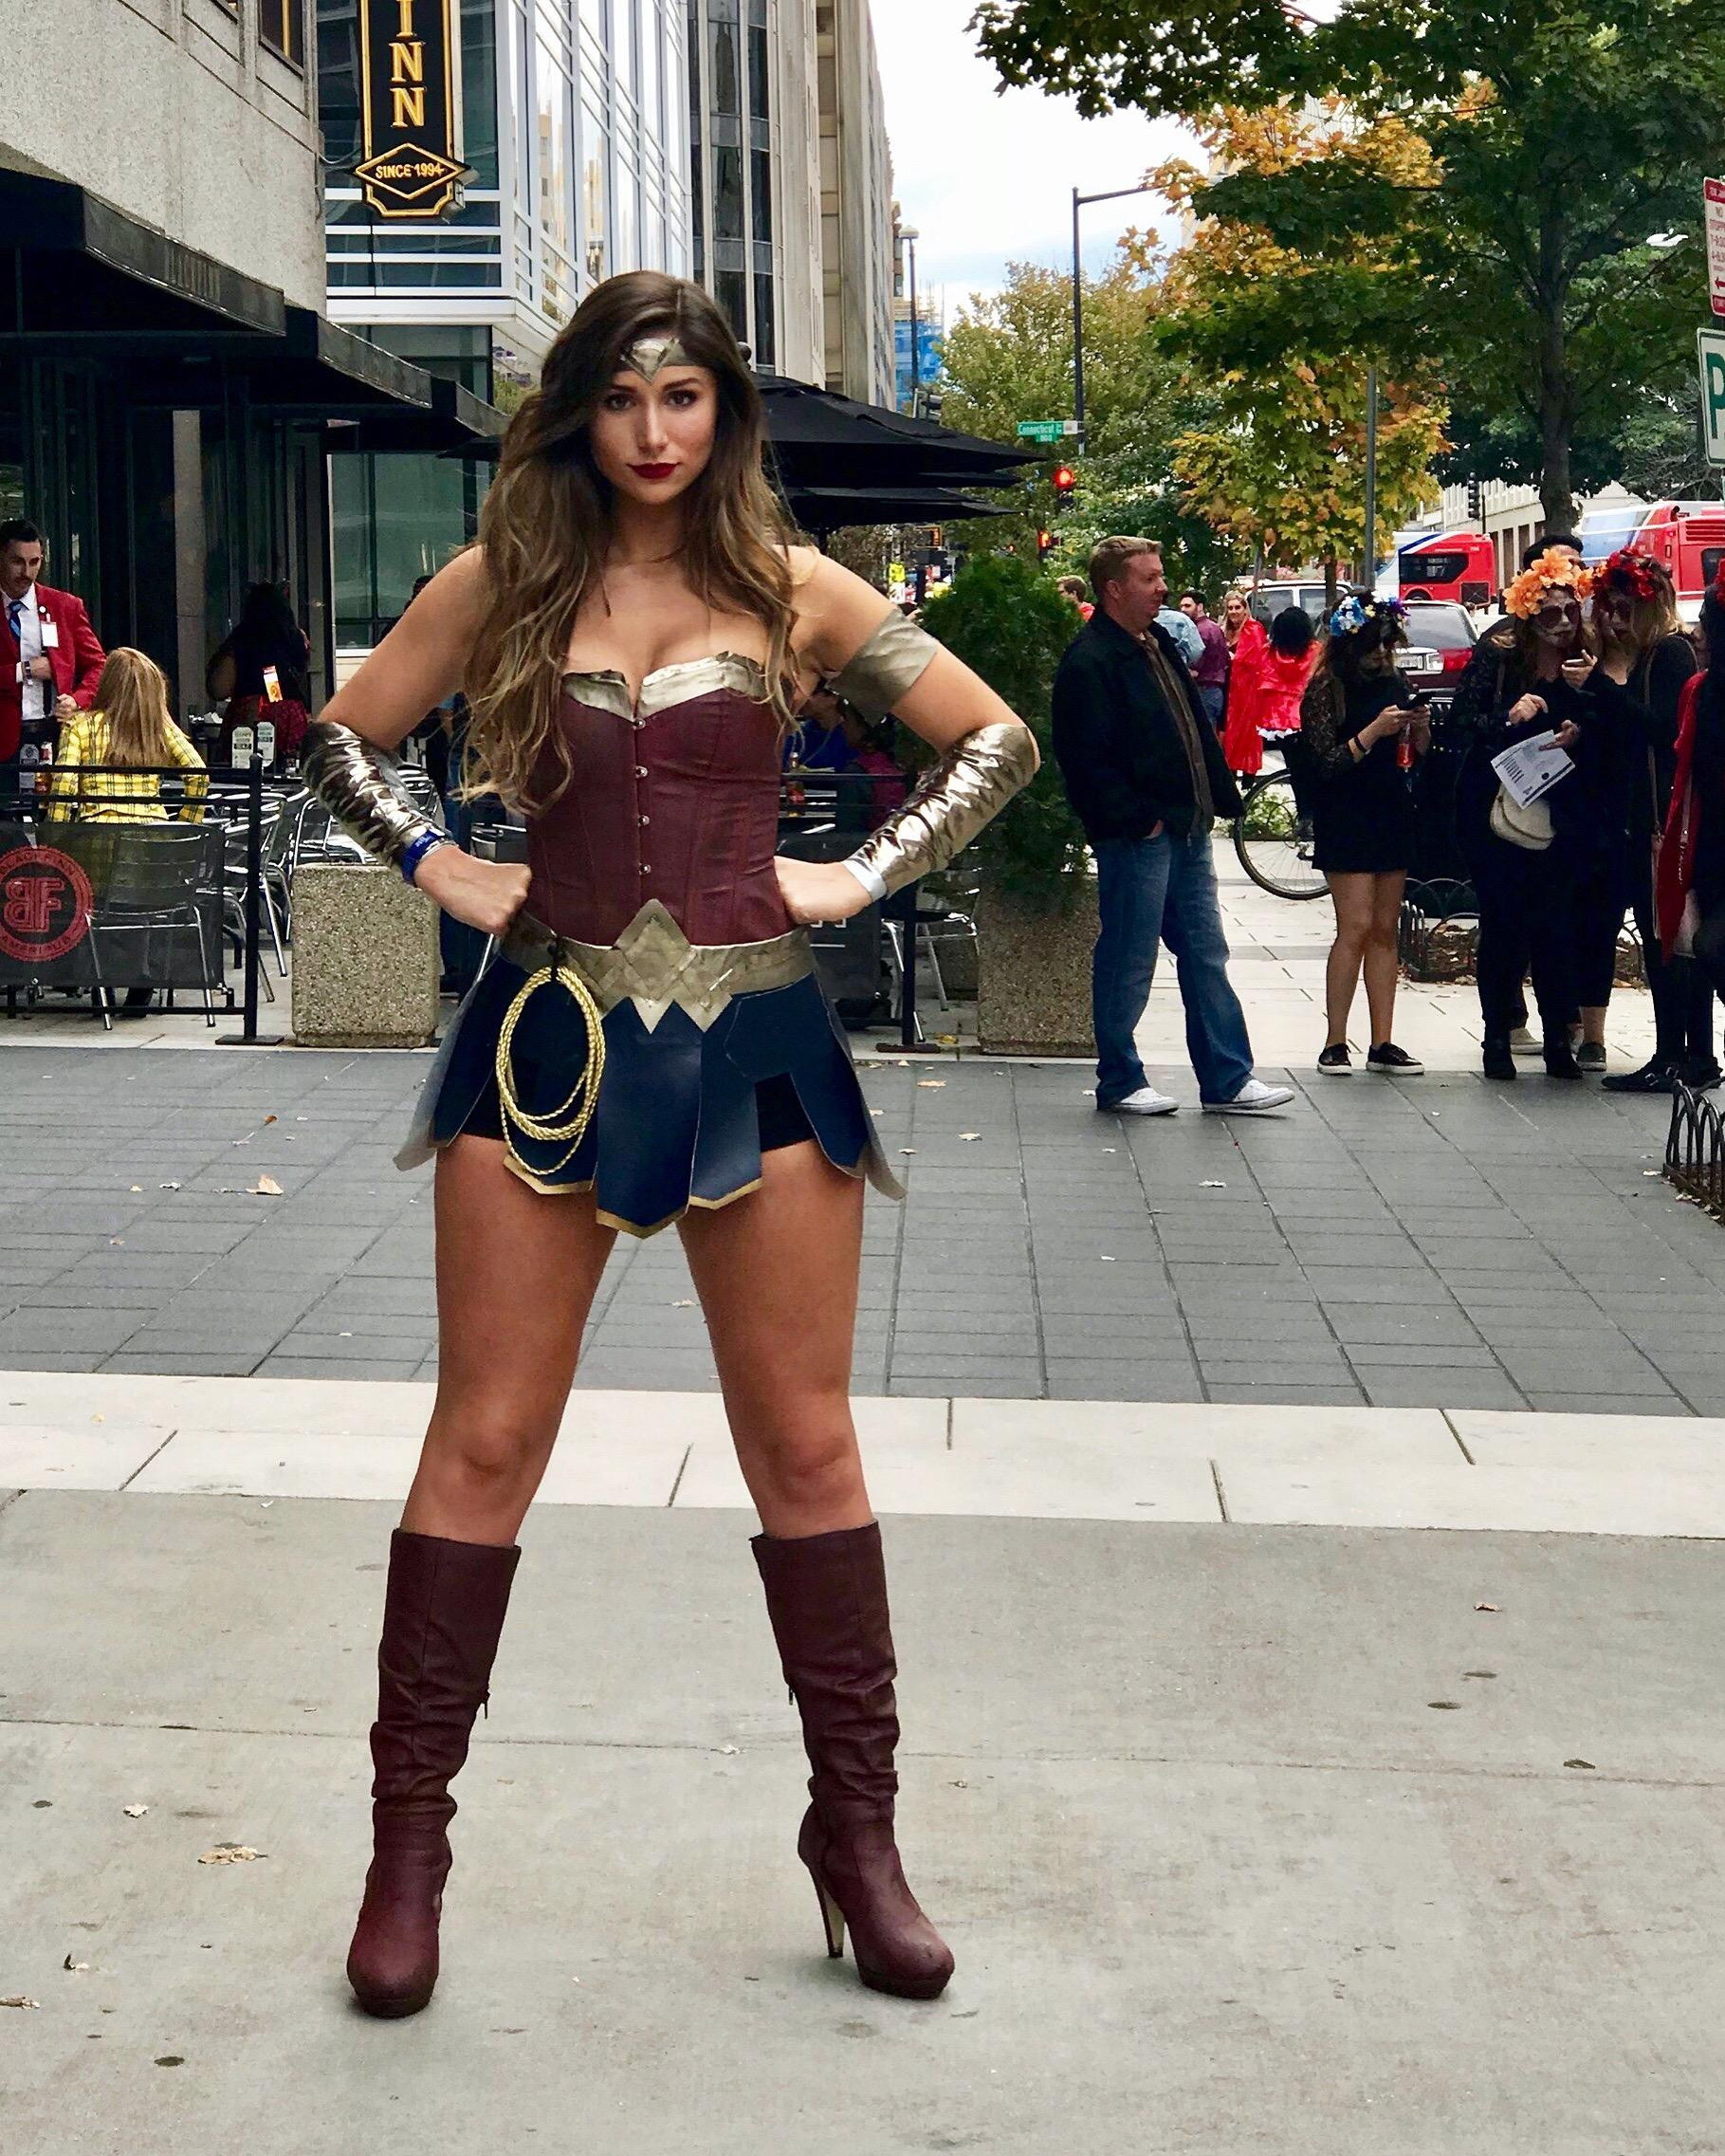 DIY Woman Costume
 DIY Wonder Woman Costume pics